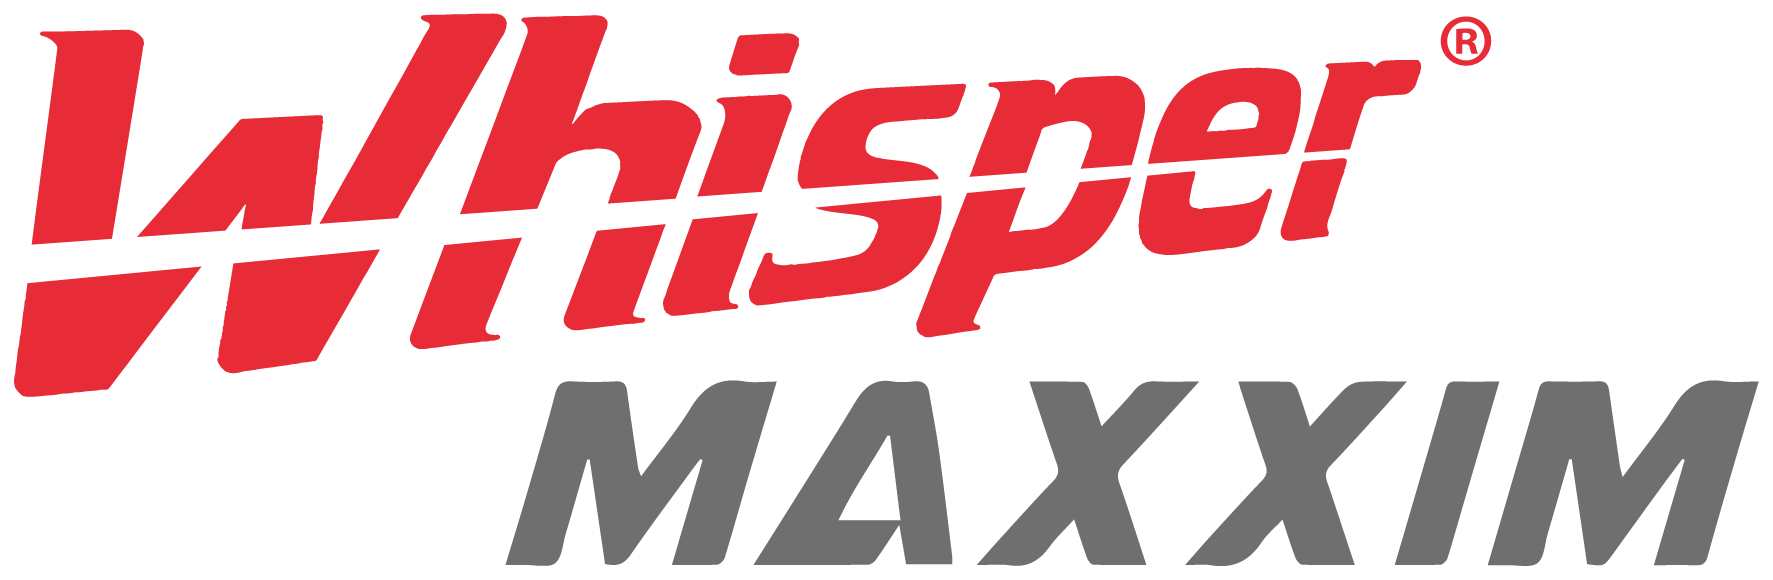 Logo Gamo Whisper Maxxim